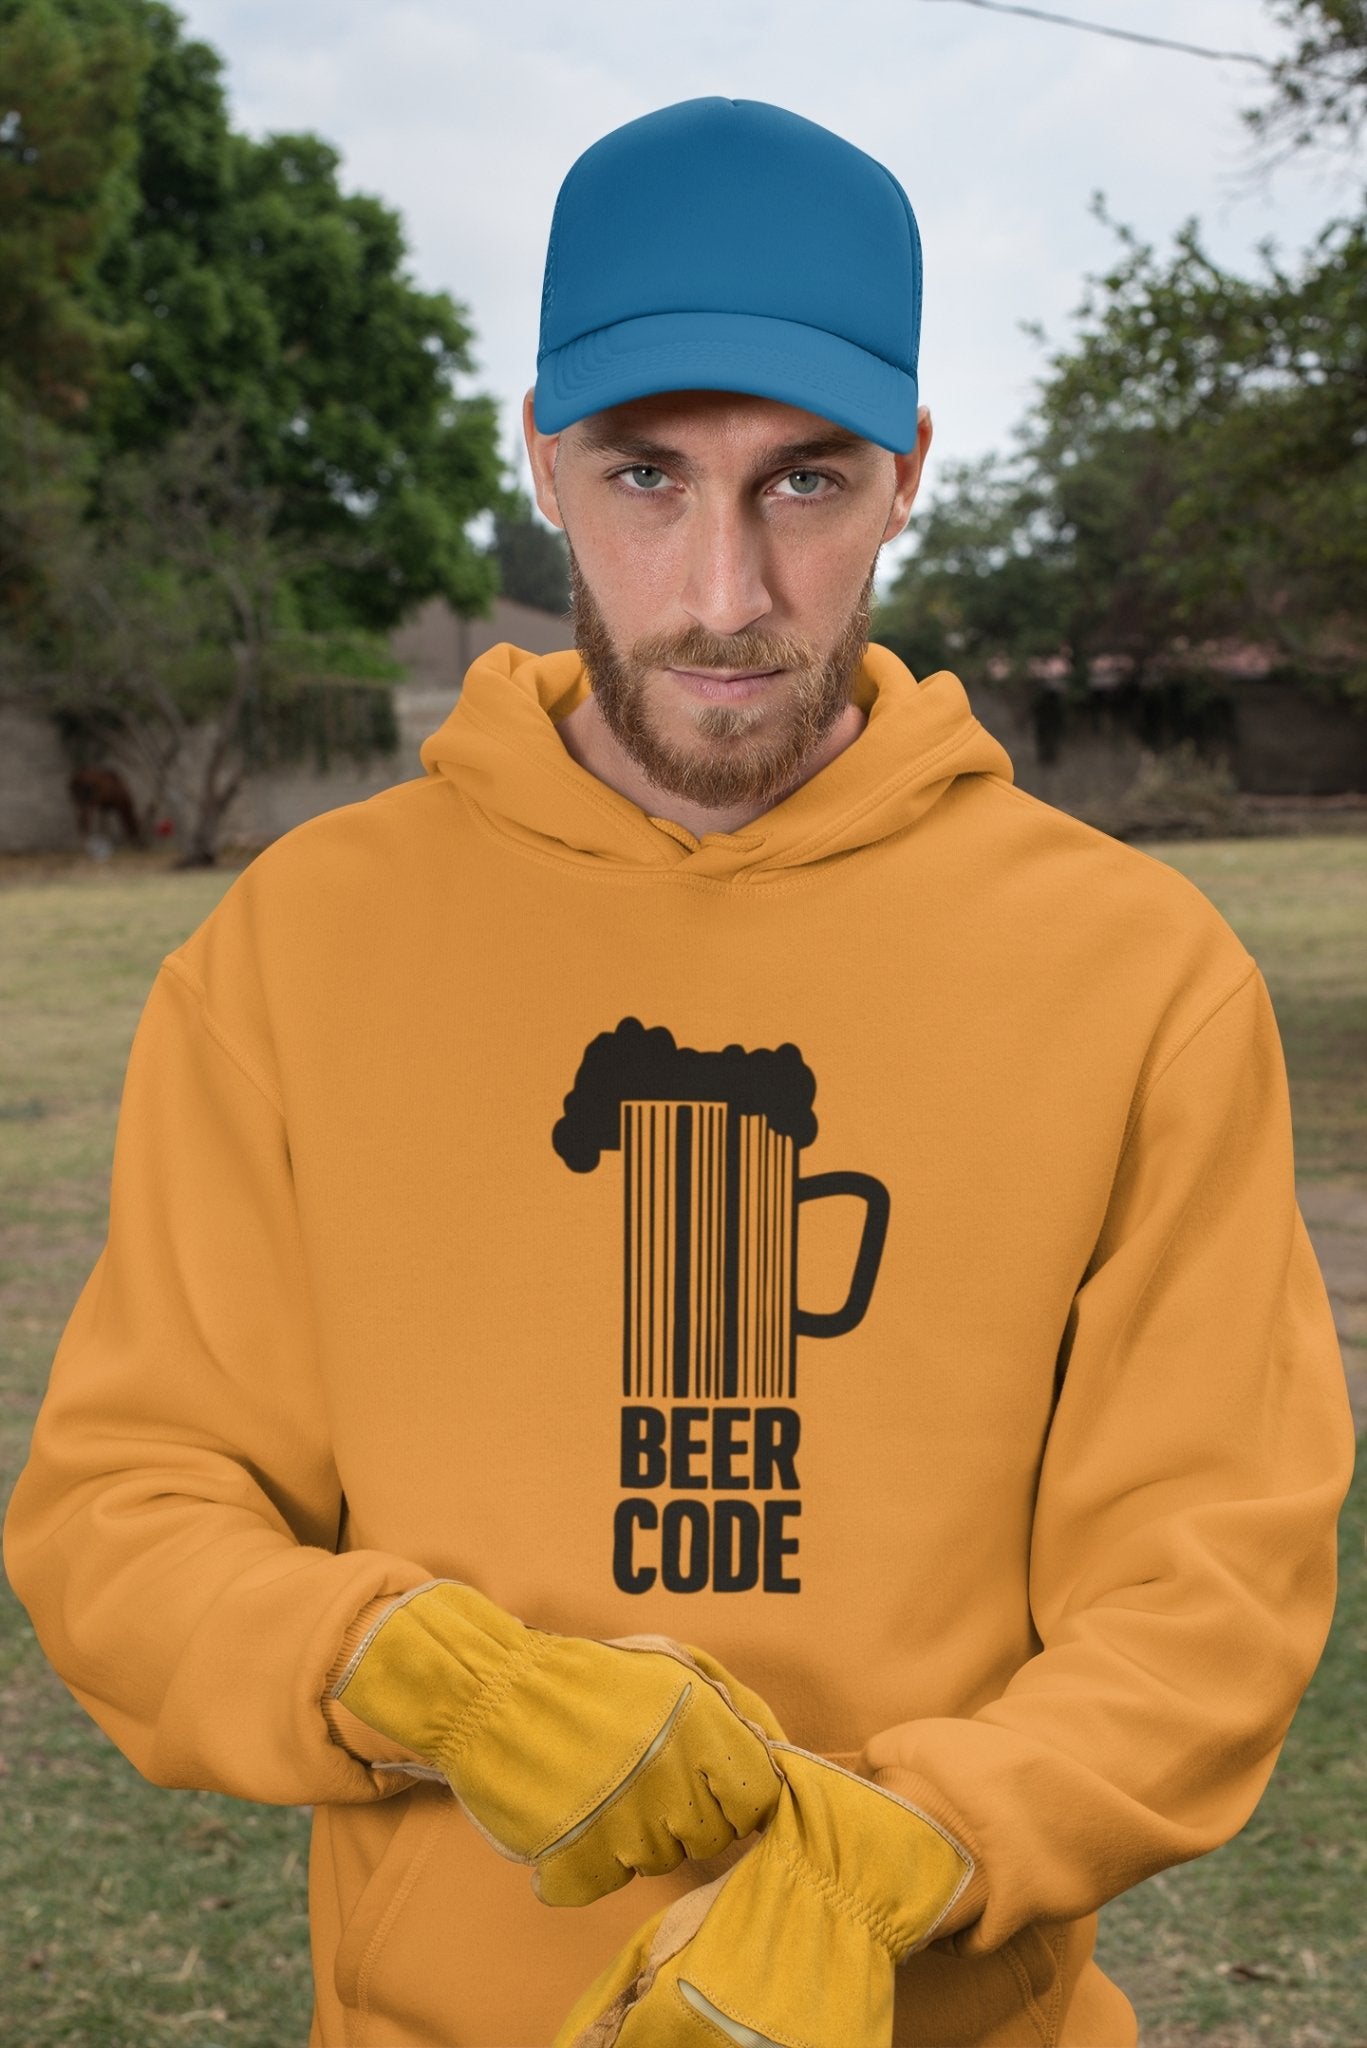 Beer Code Pub And Beer Men Hoodies-FunkyTeesClub - Funky Tees Club